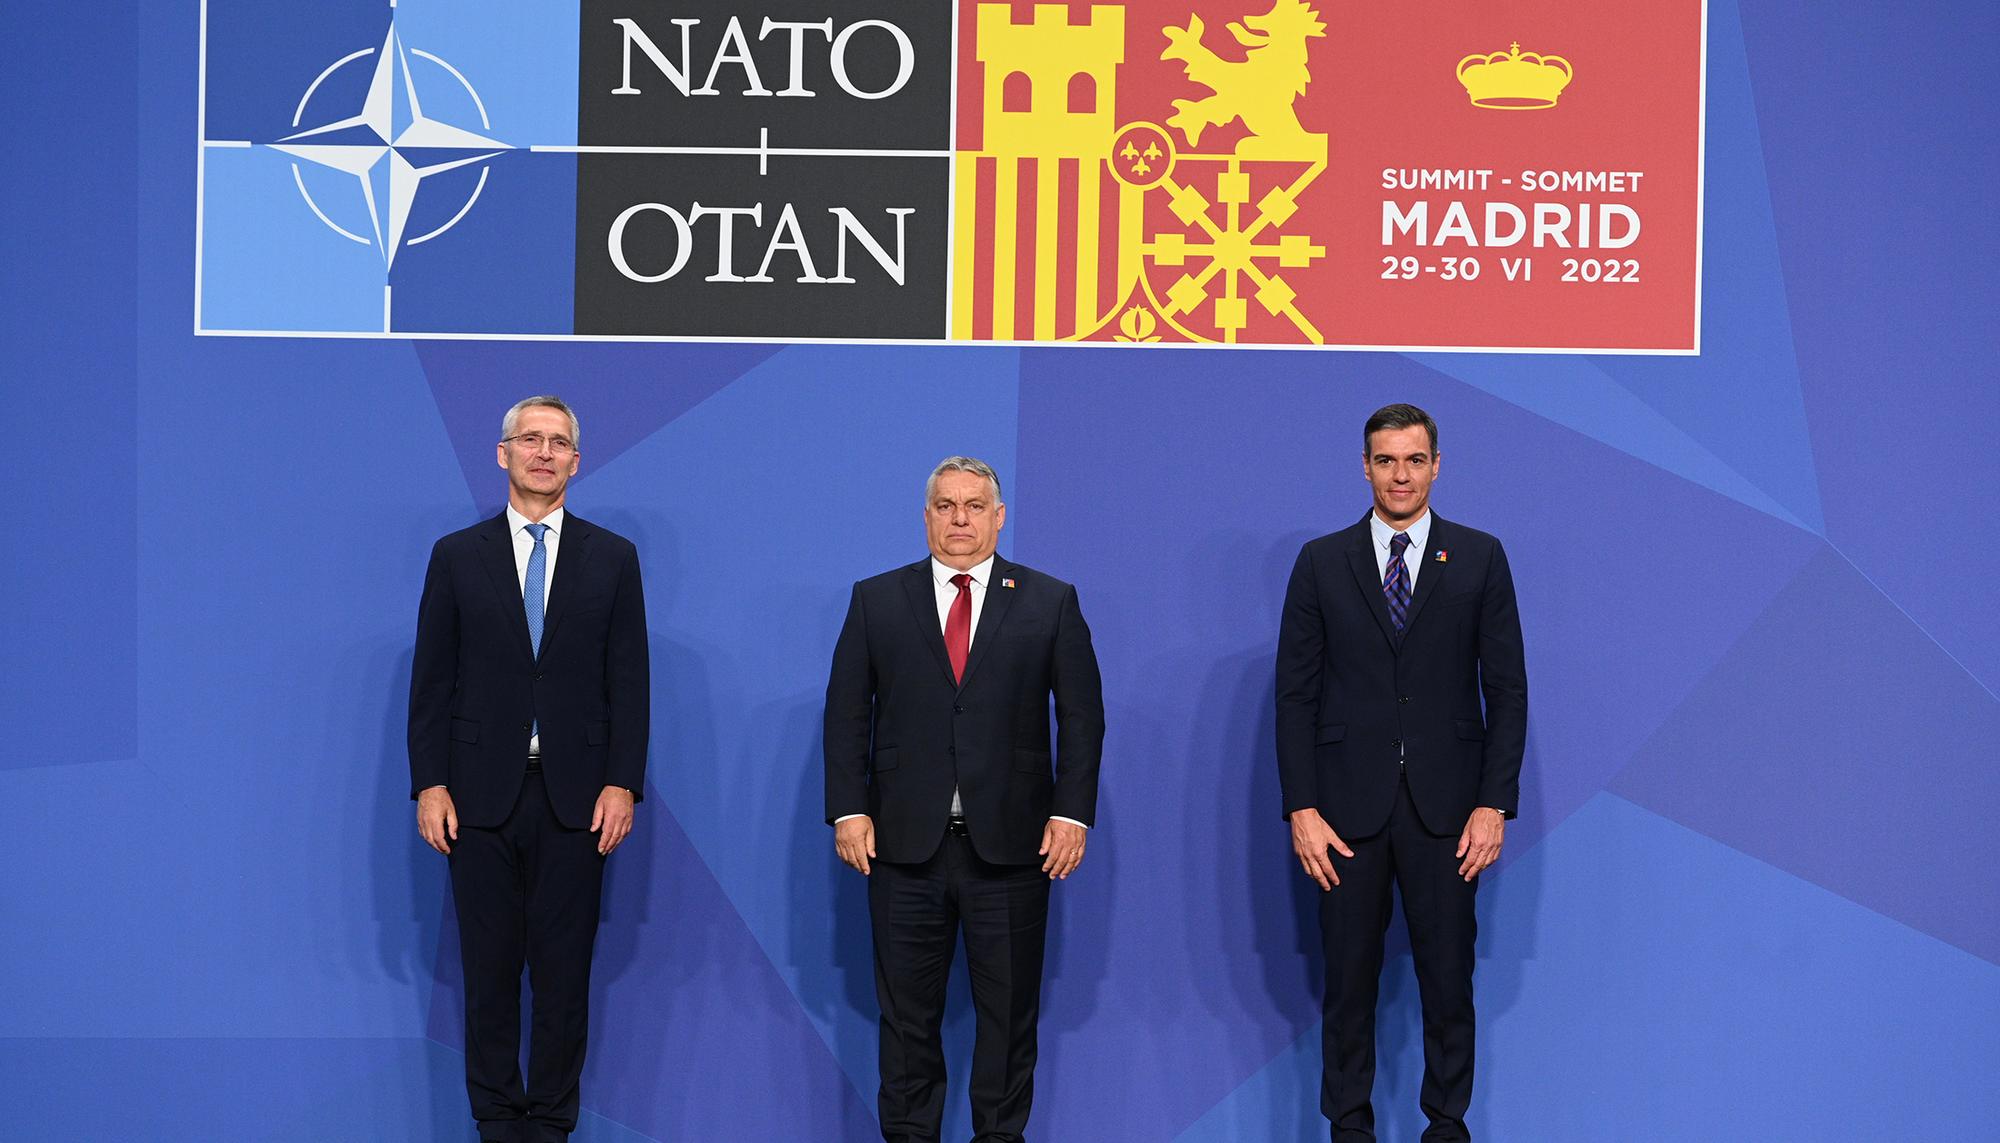 Cumbre de la OTAN Madrid 2022 Ifema - 29